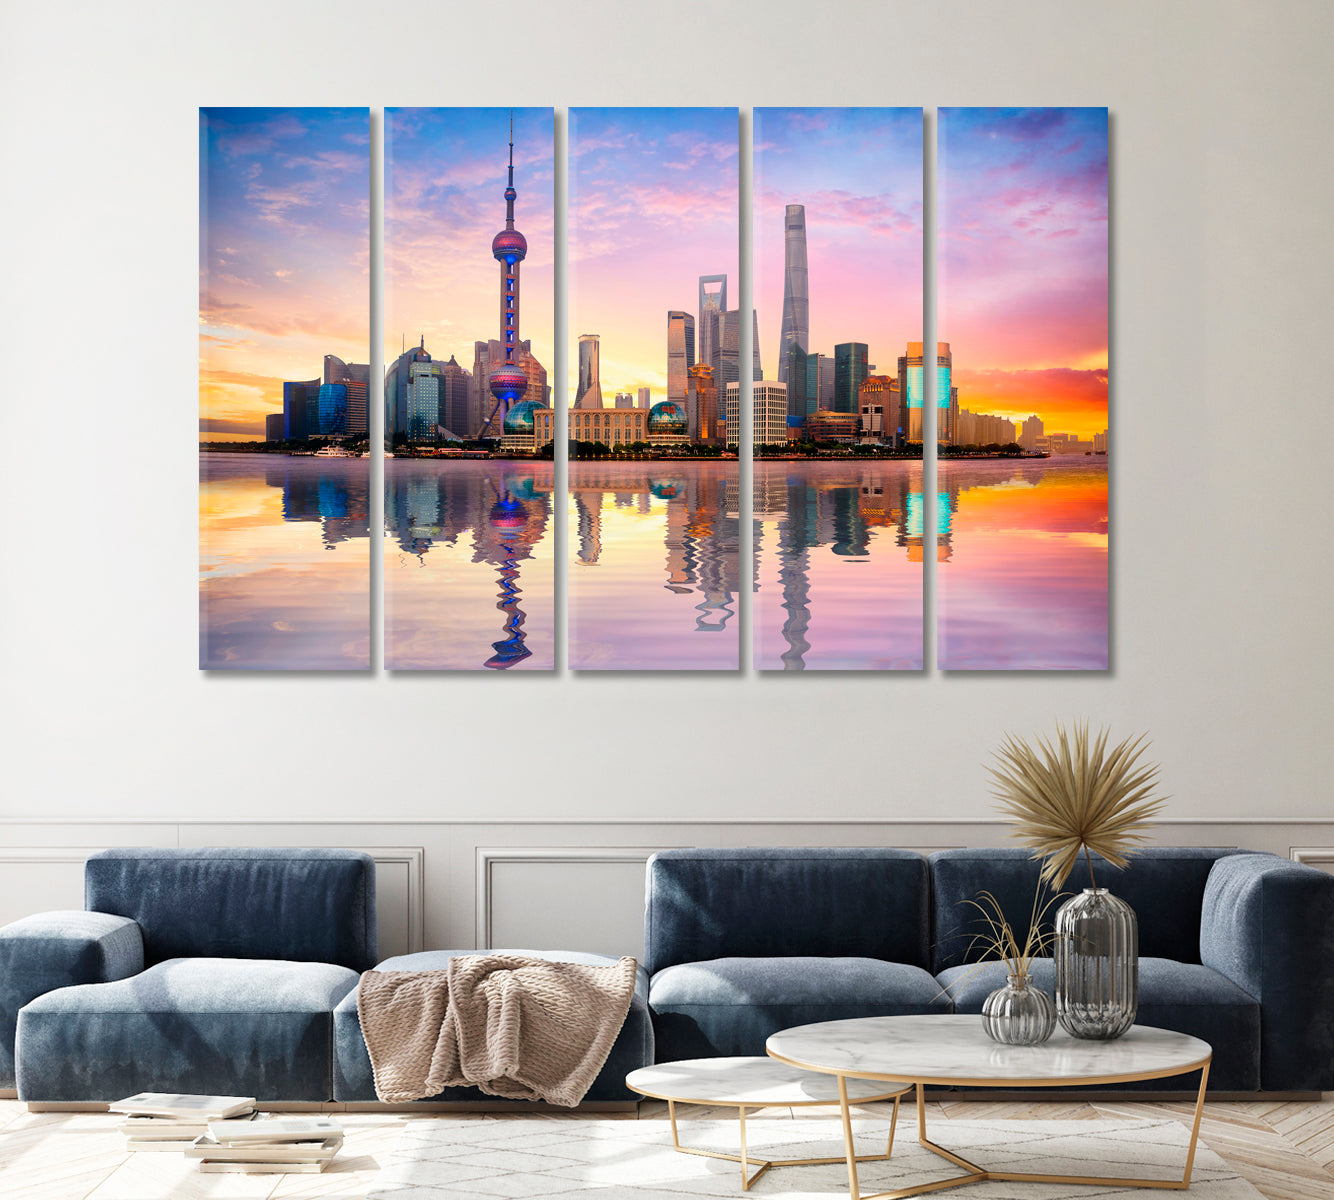 China Shanghai City Skyline at Dusk Canvas Print ArtLexy   